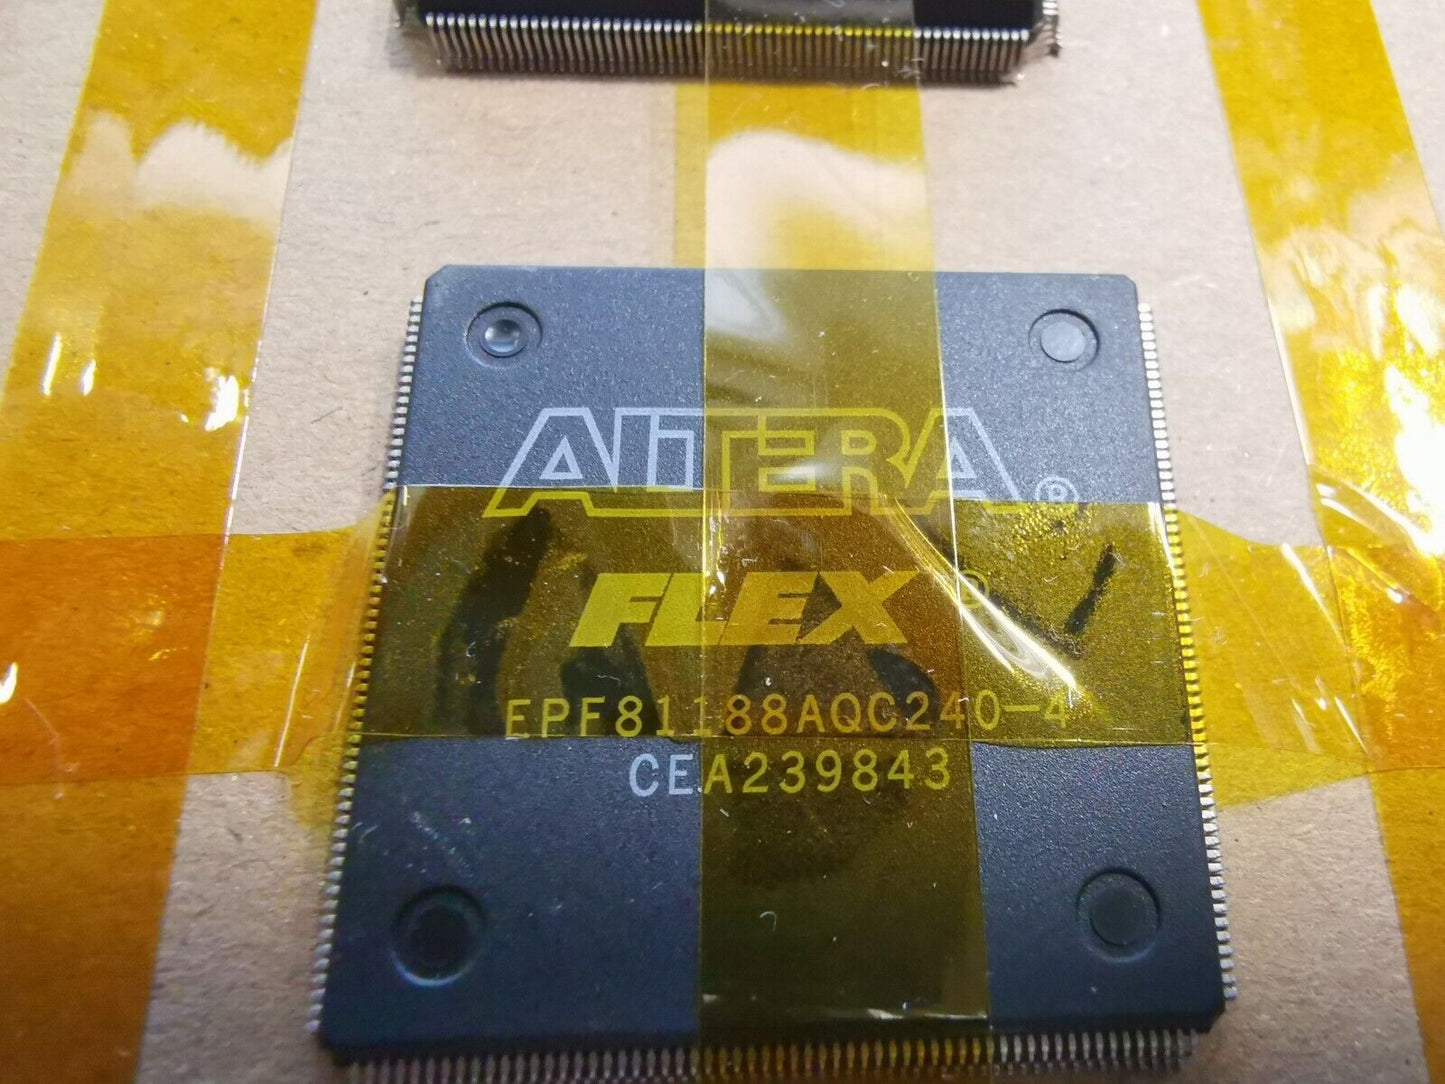 8pcs Altera Flex EPF81188AQC240-4 FPGA IC